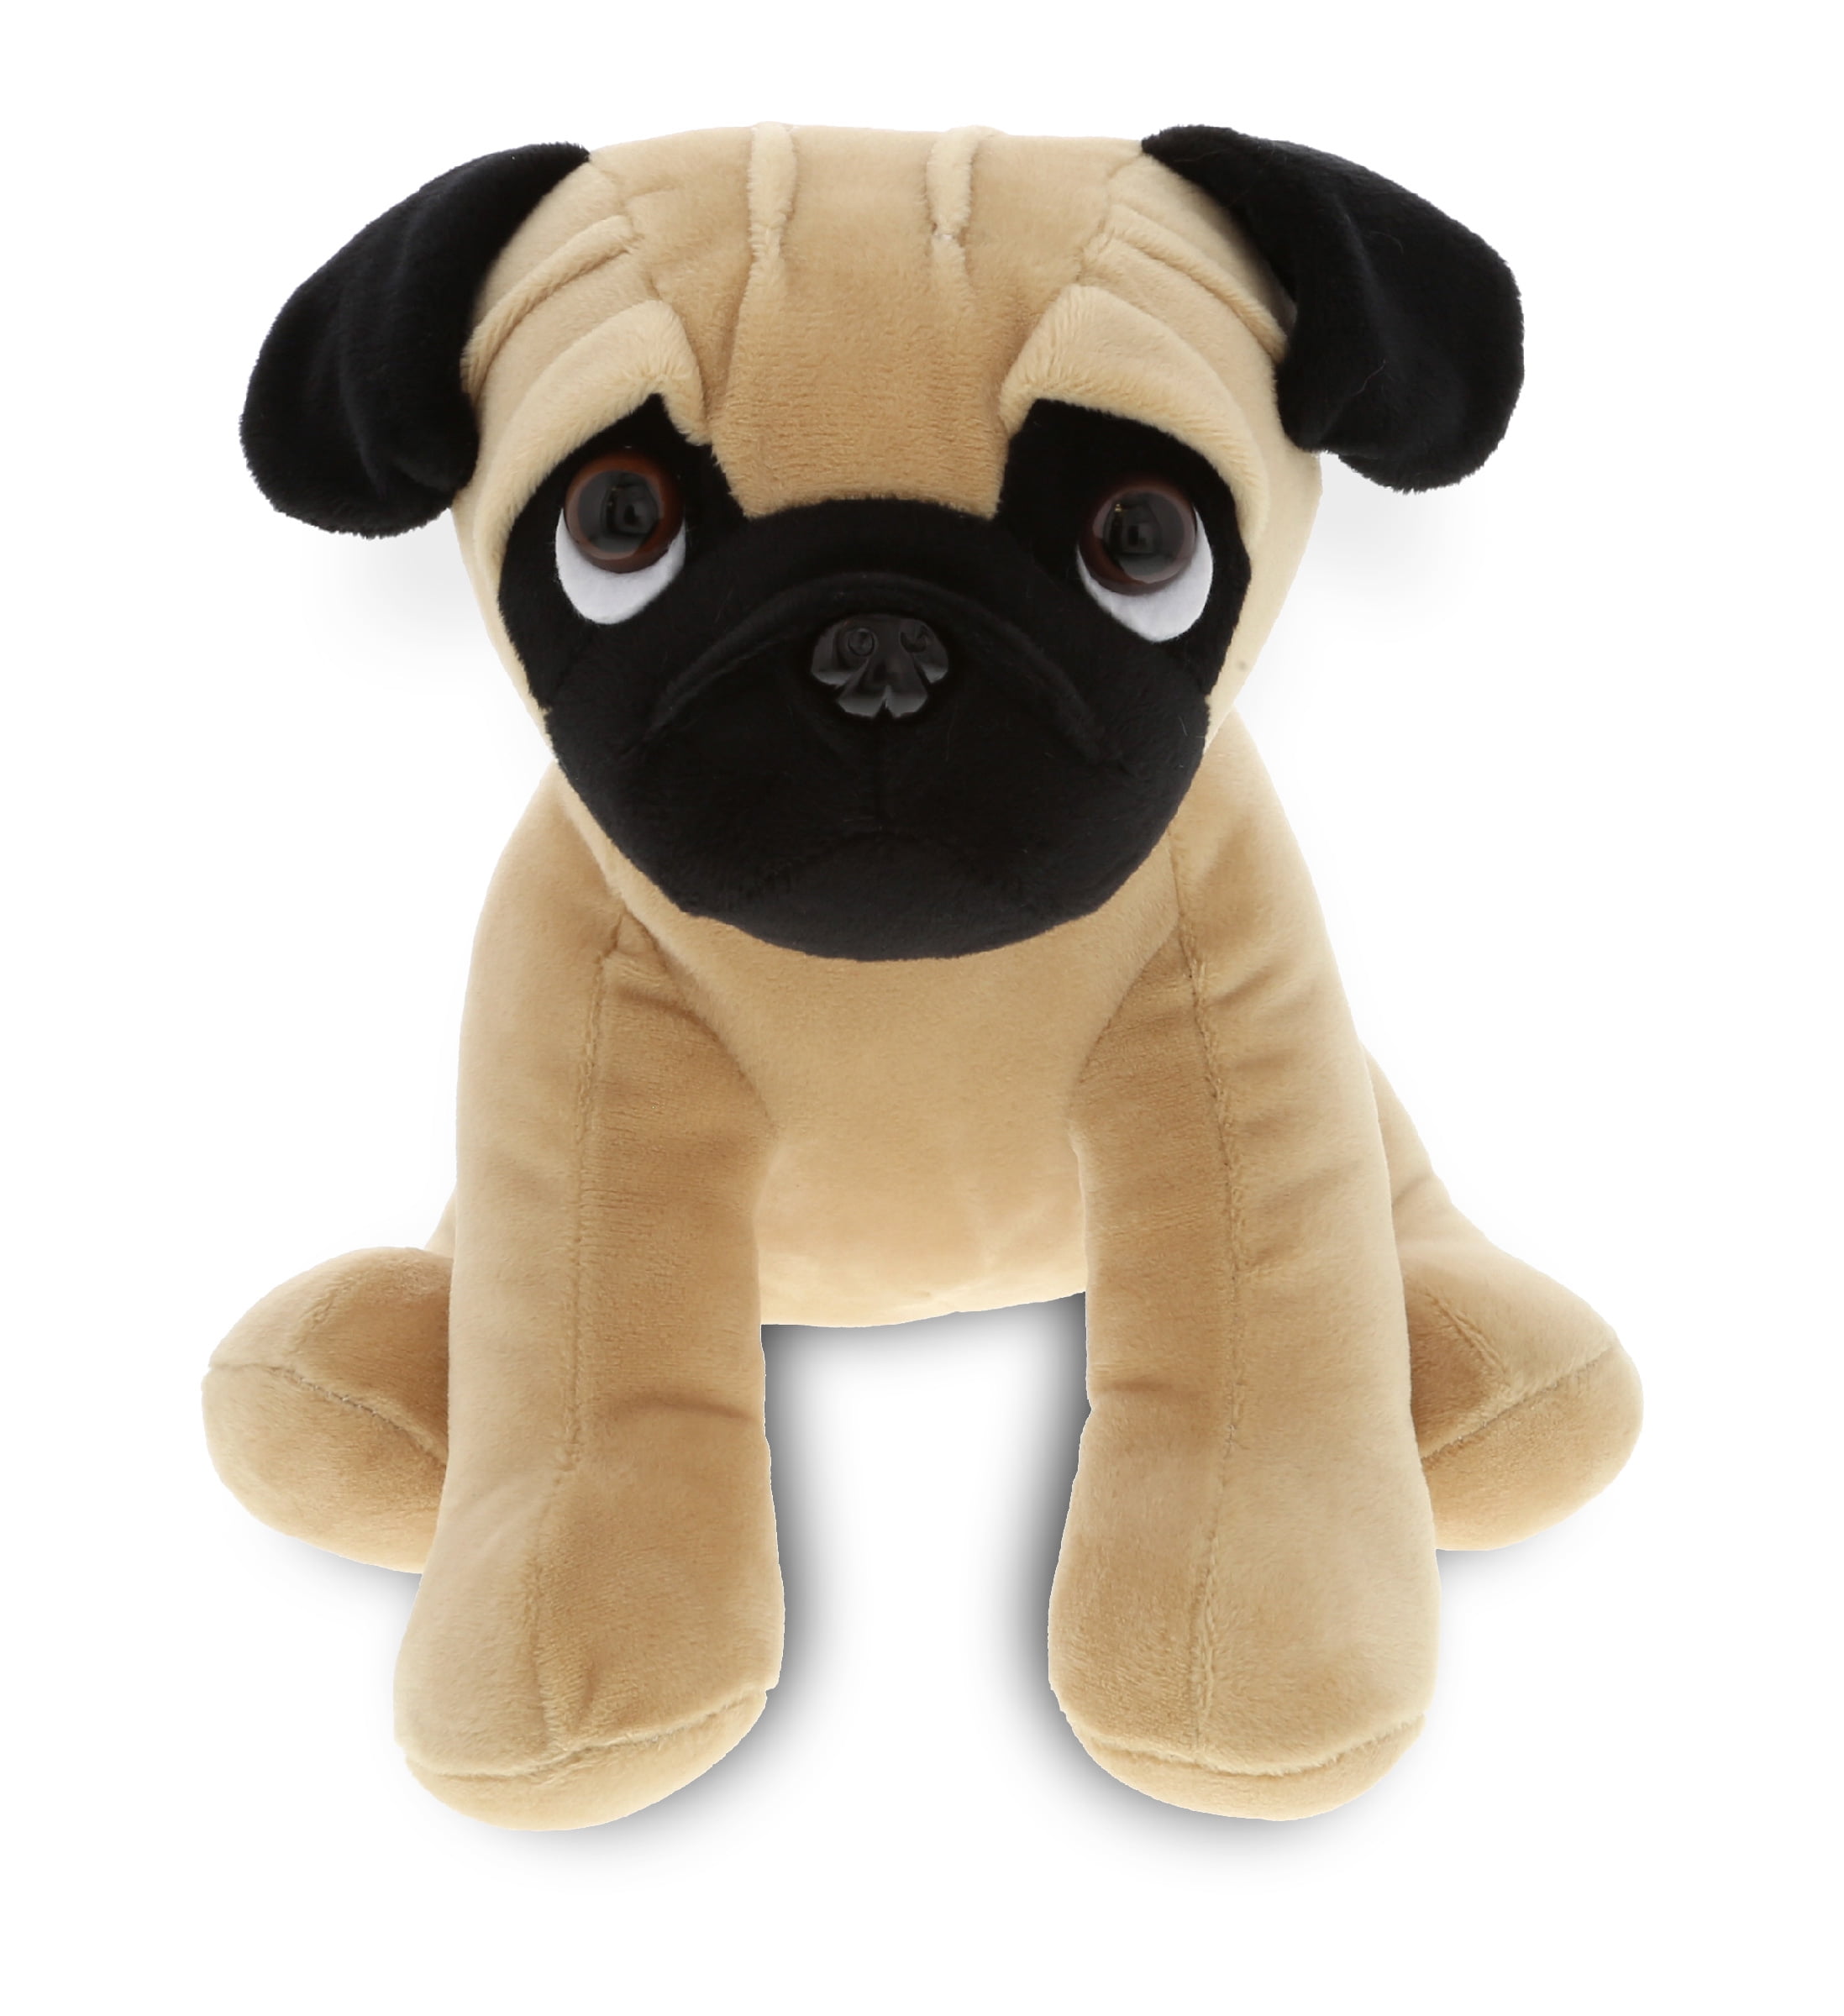 DolliBu Sitting Pug Stuffed Animal Dog Plush Toy - 10 inches 